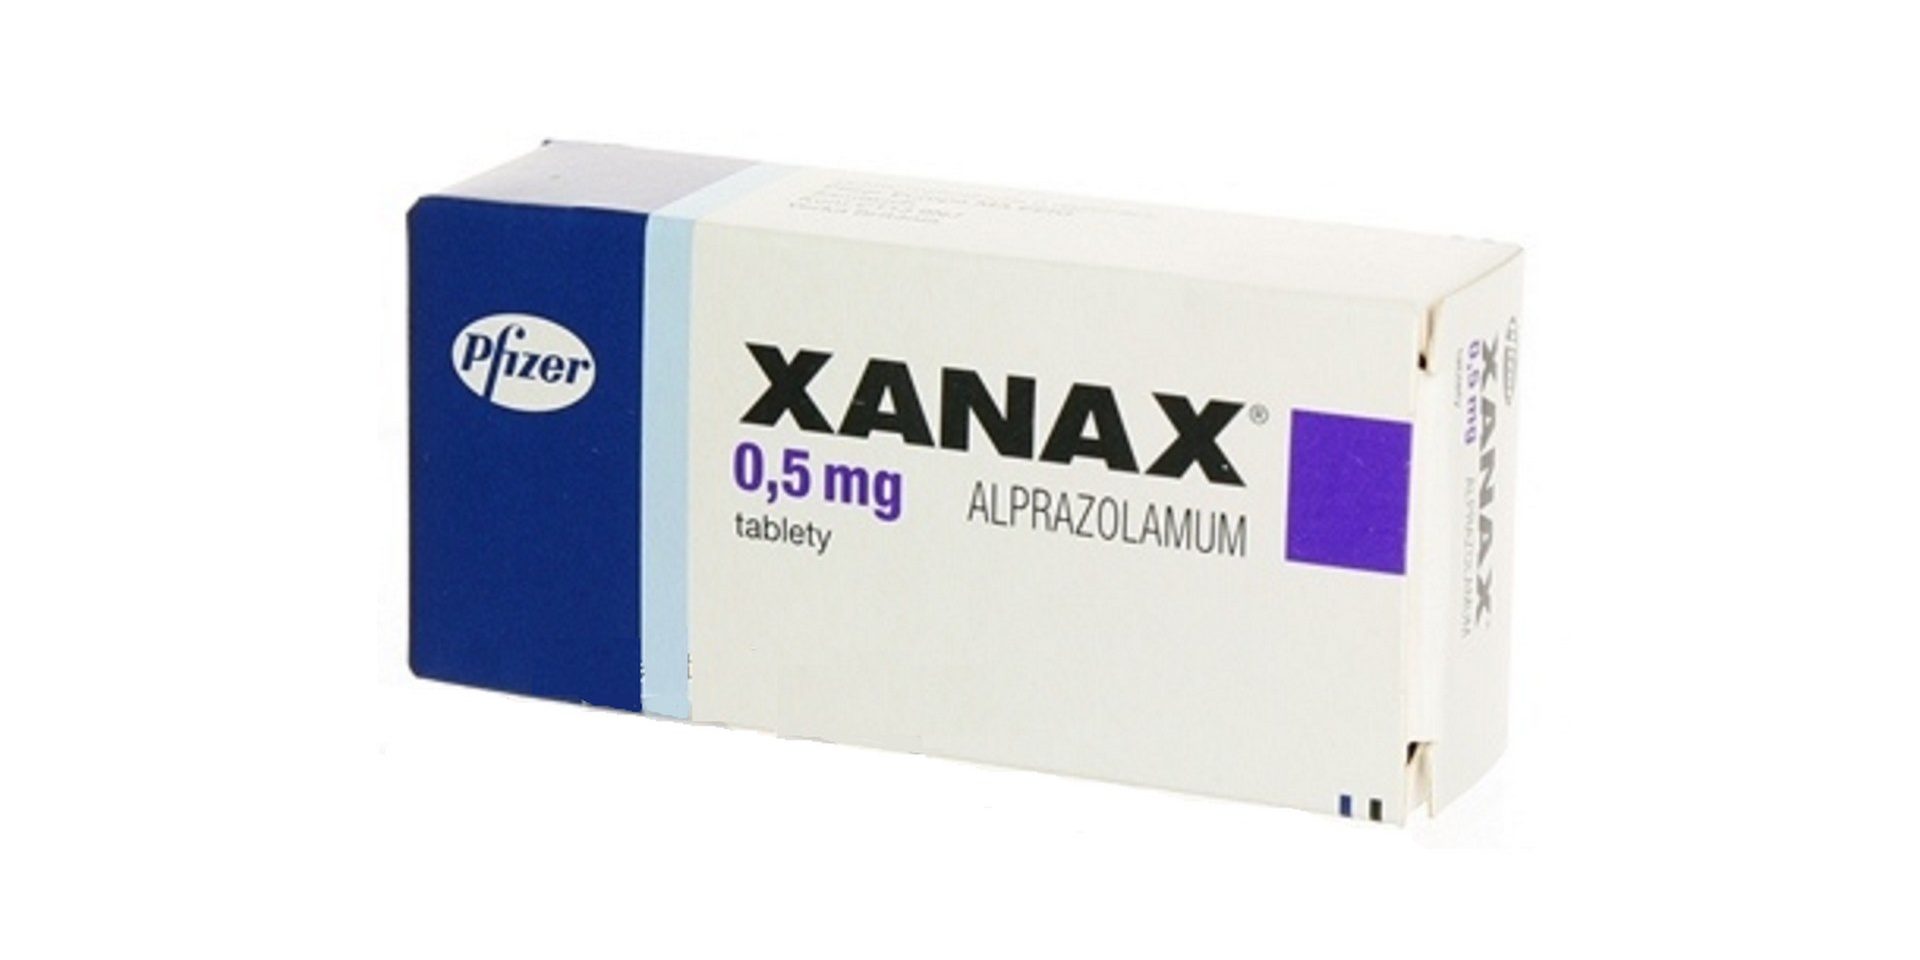 Jak dlouho lze užívat Xanax?